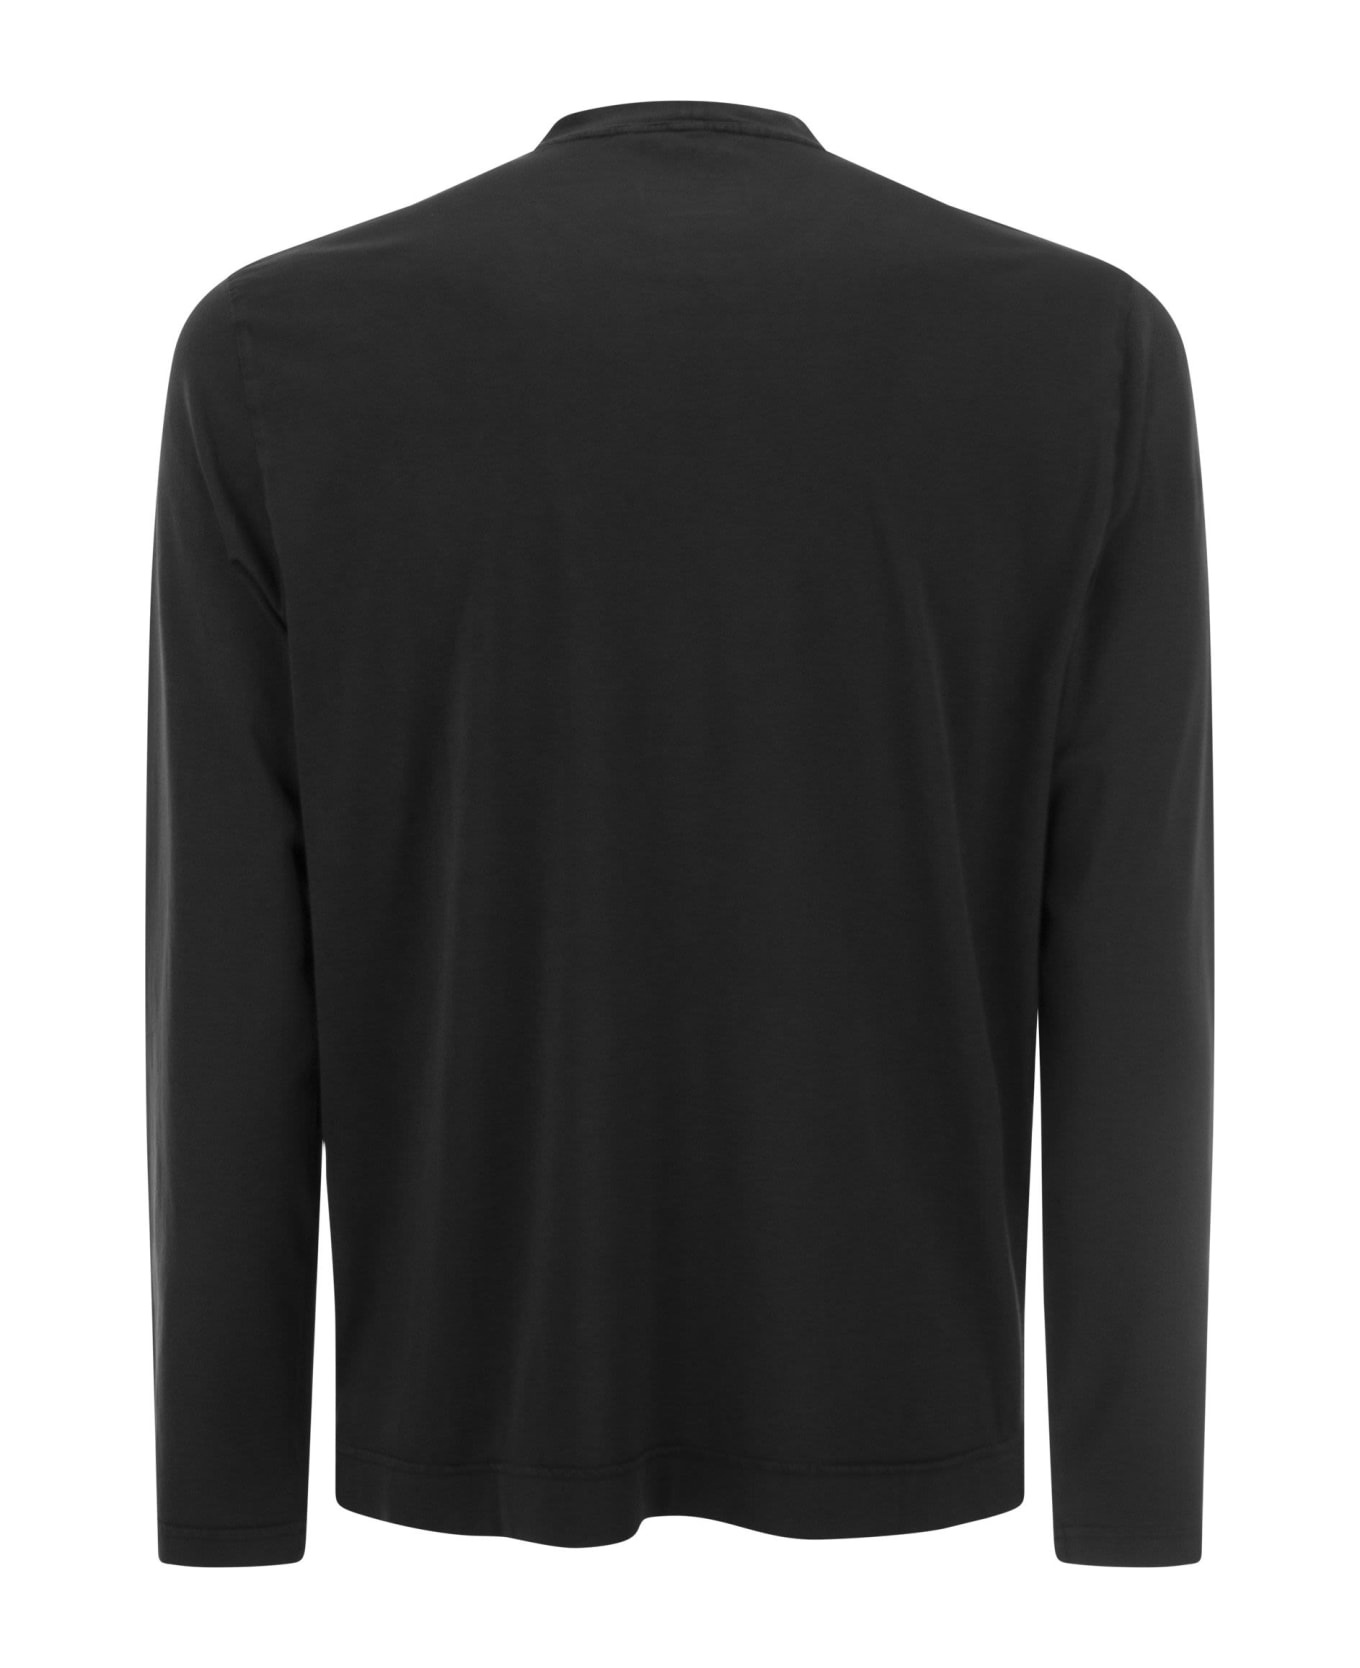 Fedeli Long-sleeved Crew-neck T-shirt - Black